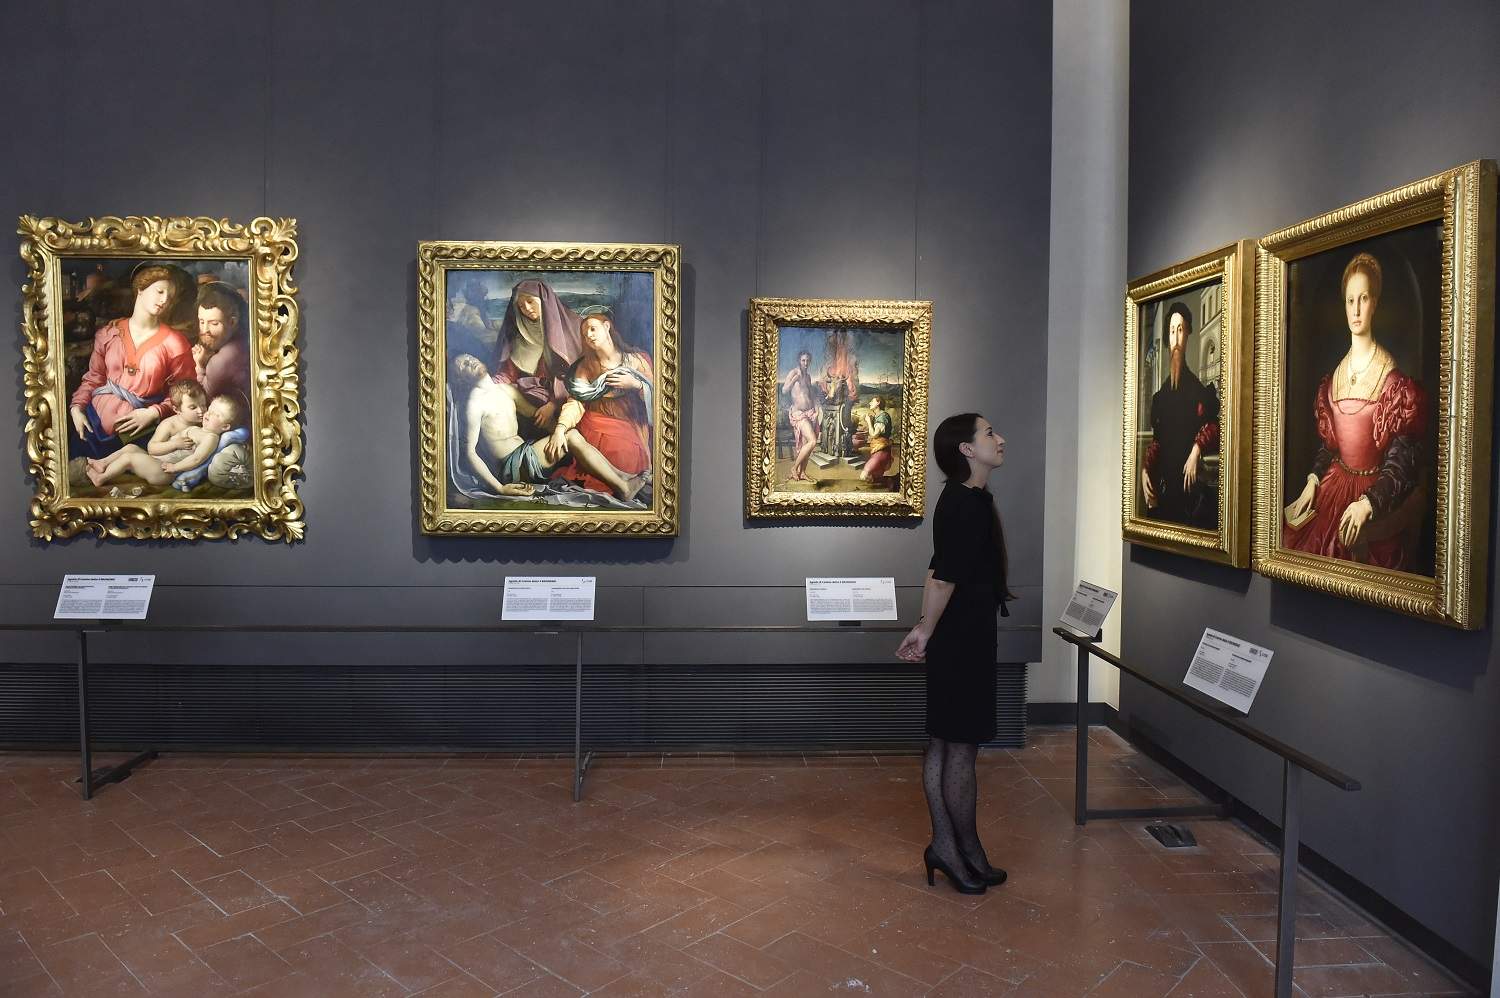 La création d'un méga-musée Uffizi-Galleria dell'Accademia se dessine-t-elle ? Les deux instituts florentins pourraient fusionner